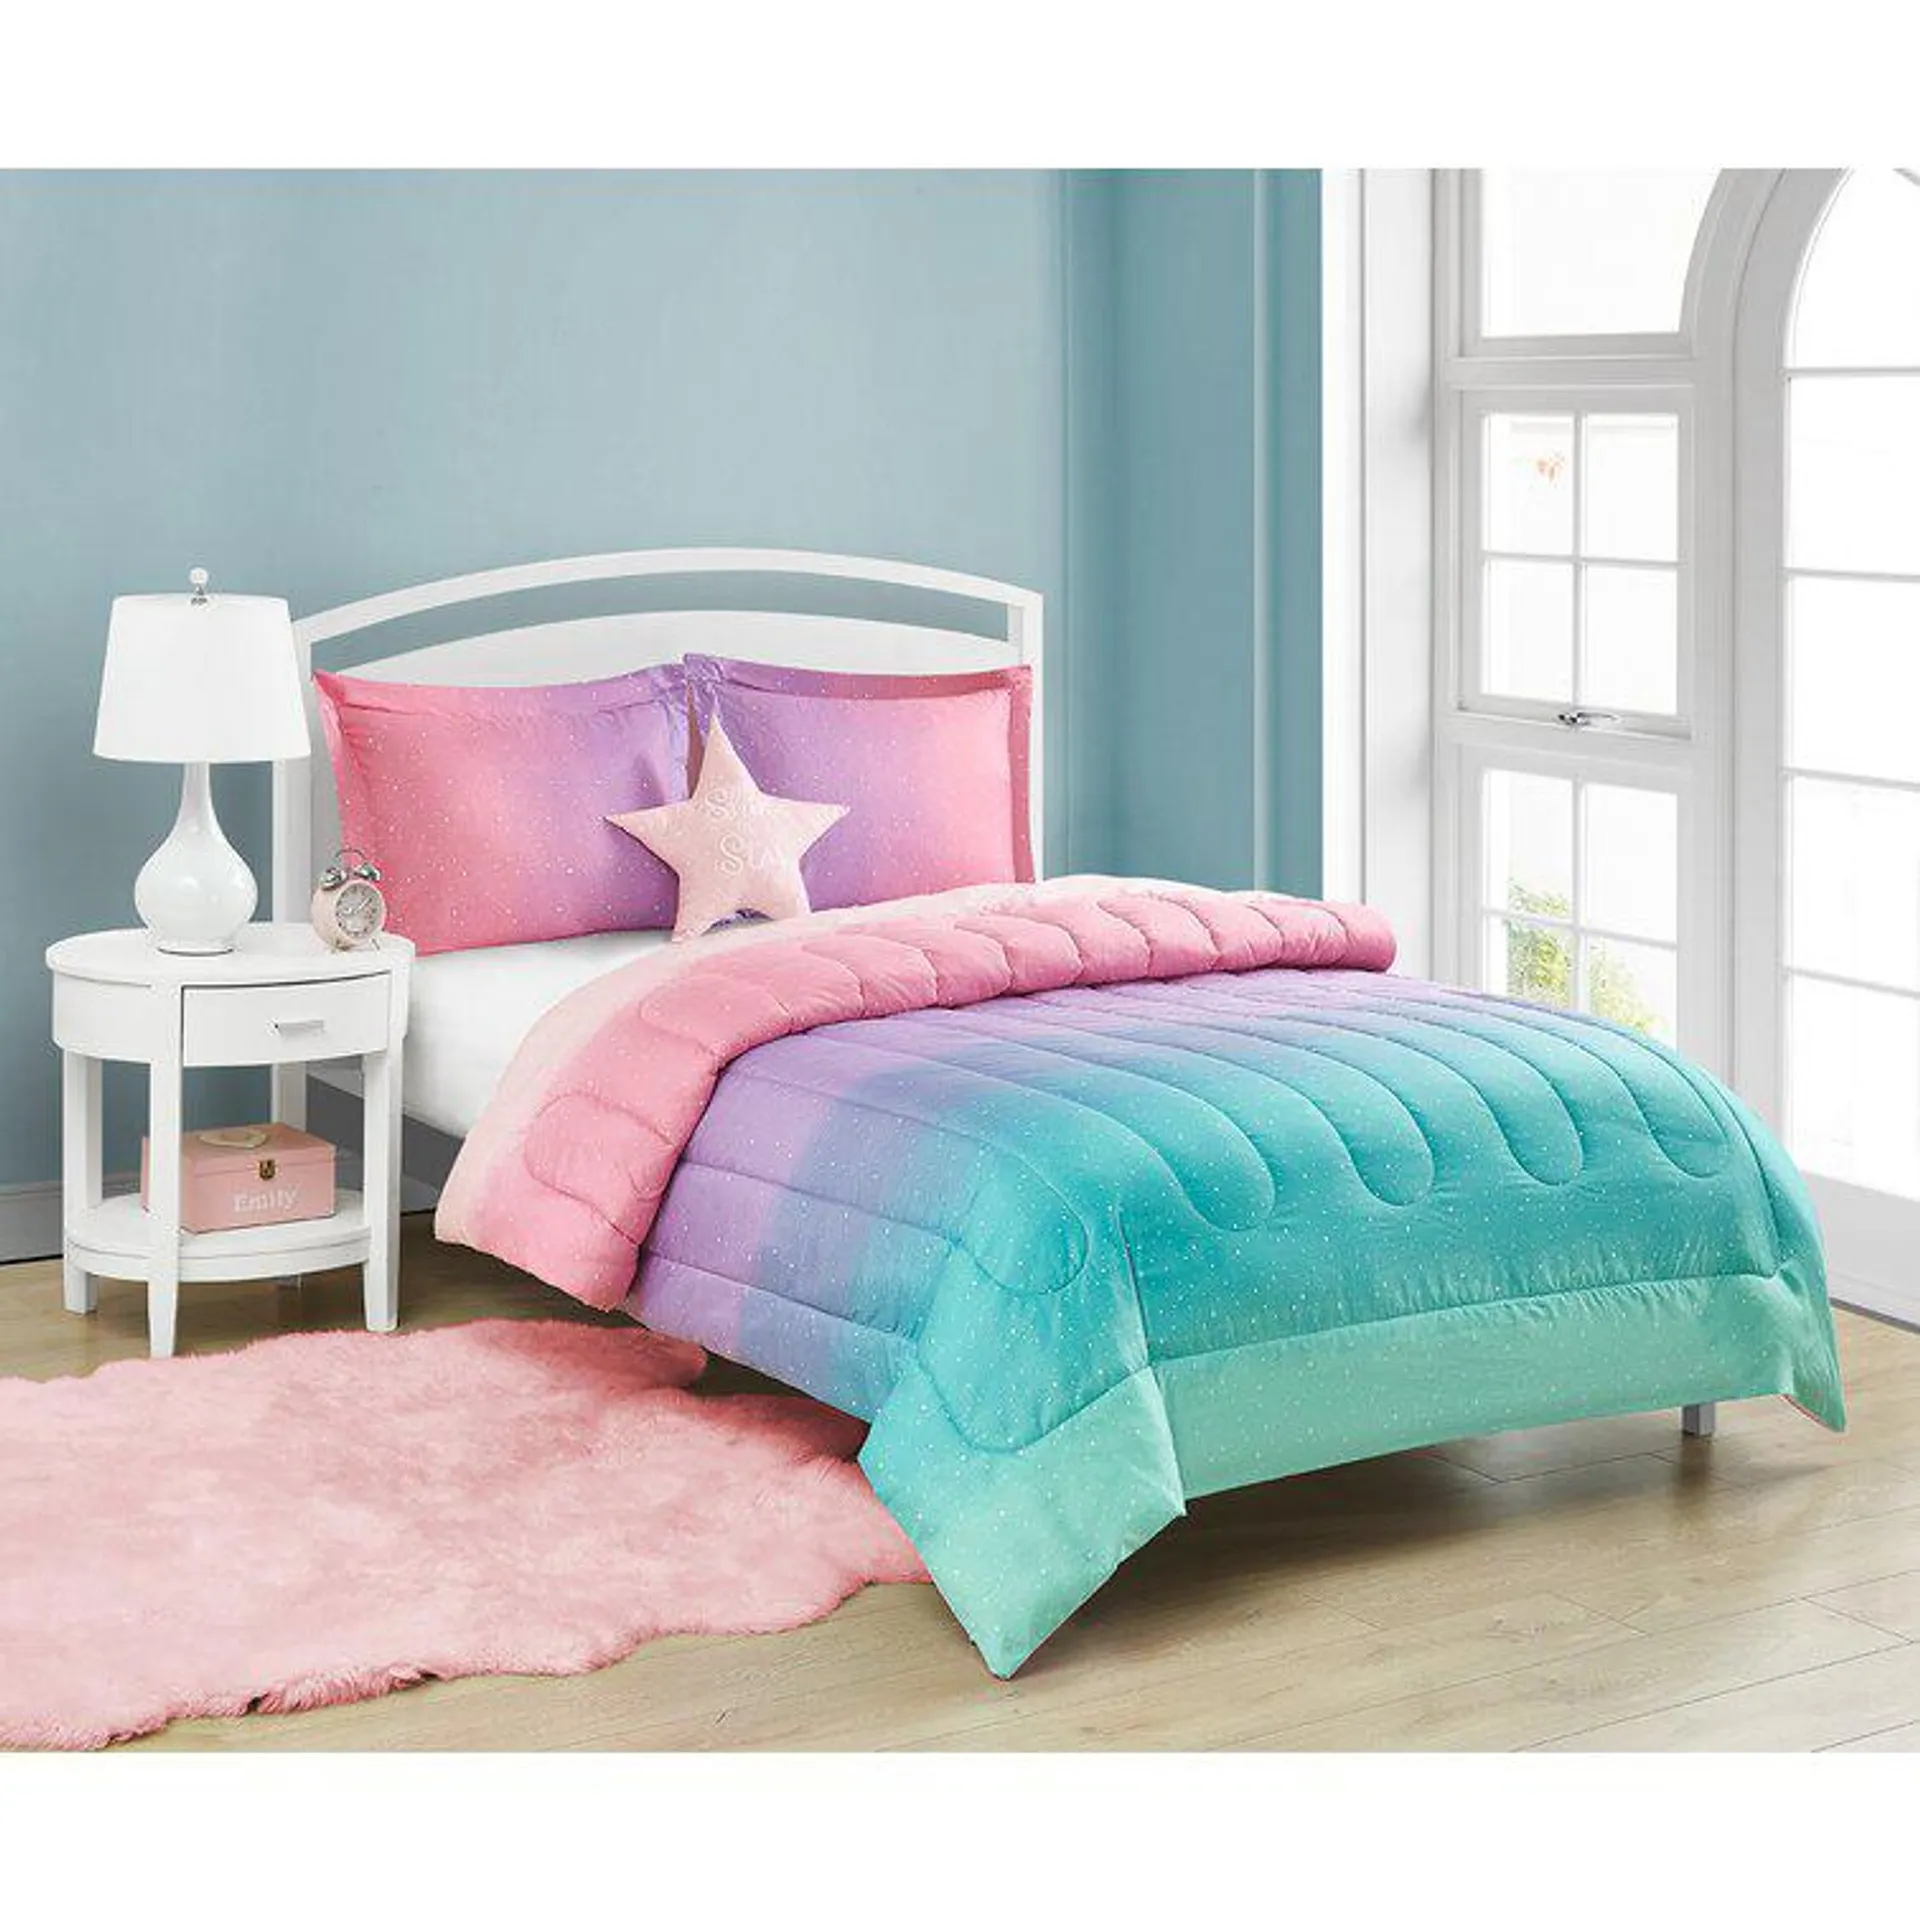 Jada Celestial Ombre 4 Piece Mini Comforter Set With Decorative Pillow